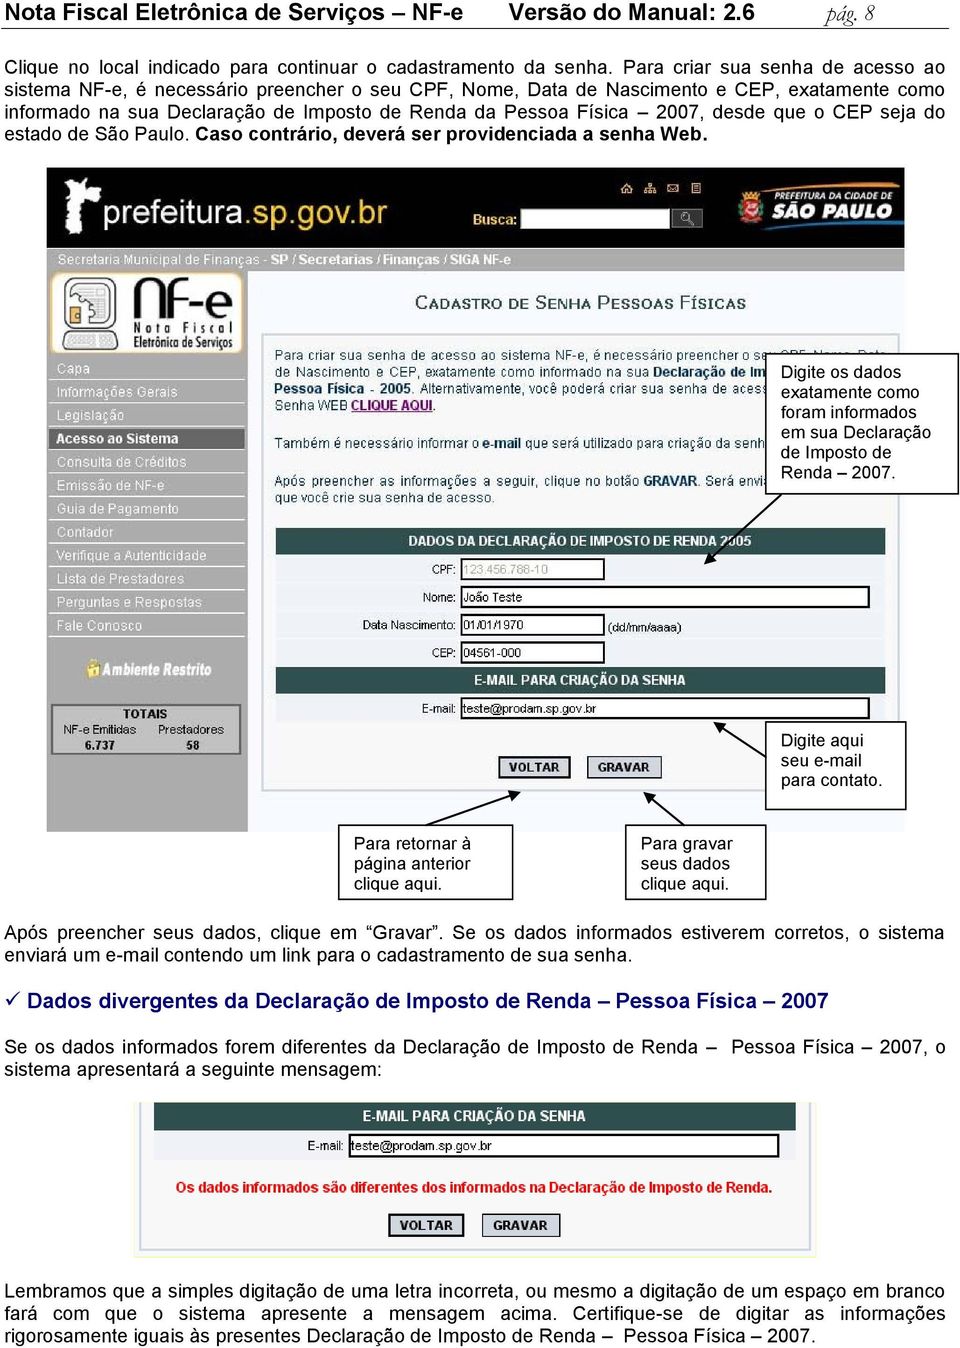 2007, desde que o CEP seja do estado de São Paulo. Caso contrário, deverá ser providenciada a senha Web. Digite os dados exatamente como foram informados em sua Declaração de Imposto de Renda 2007.